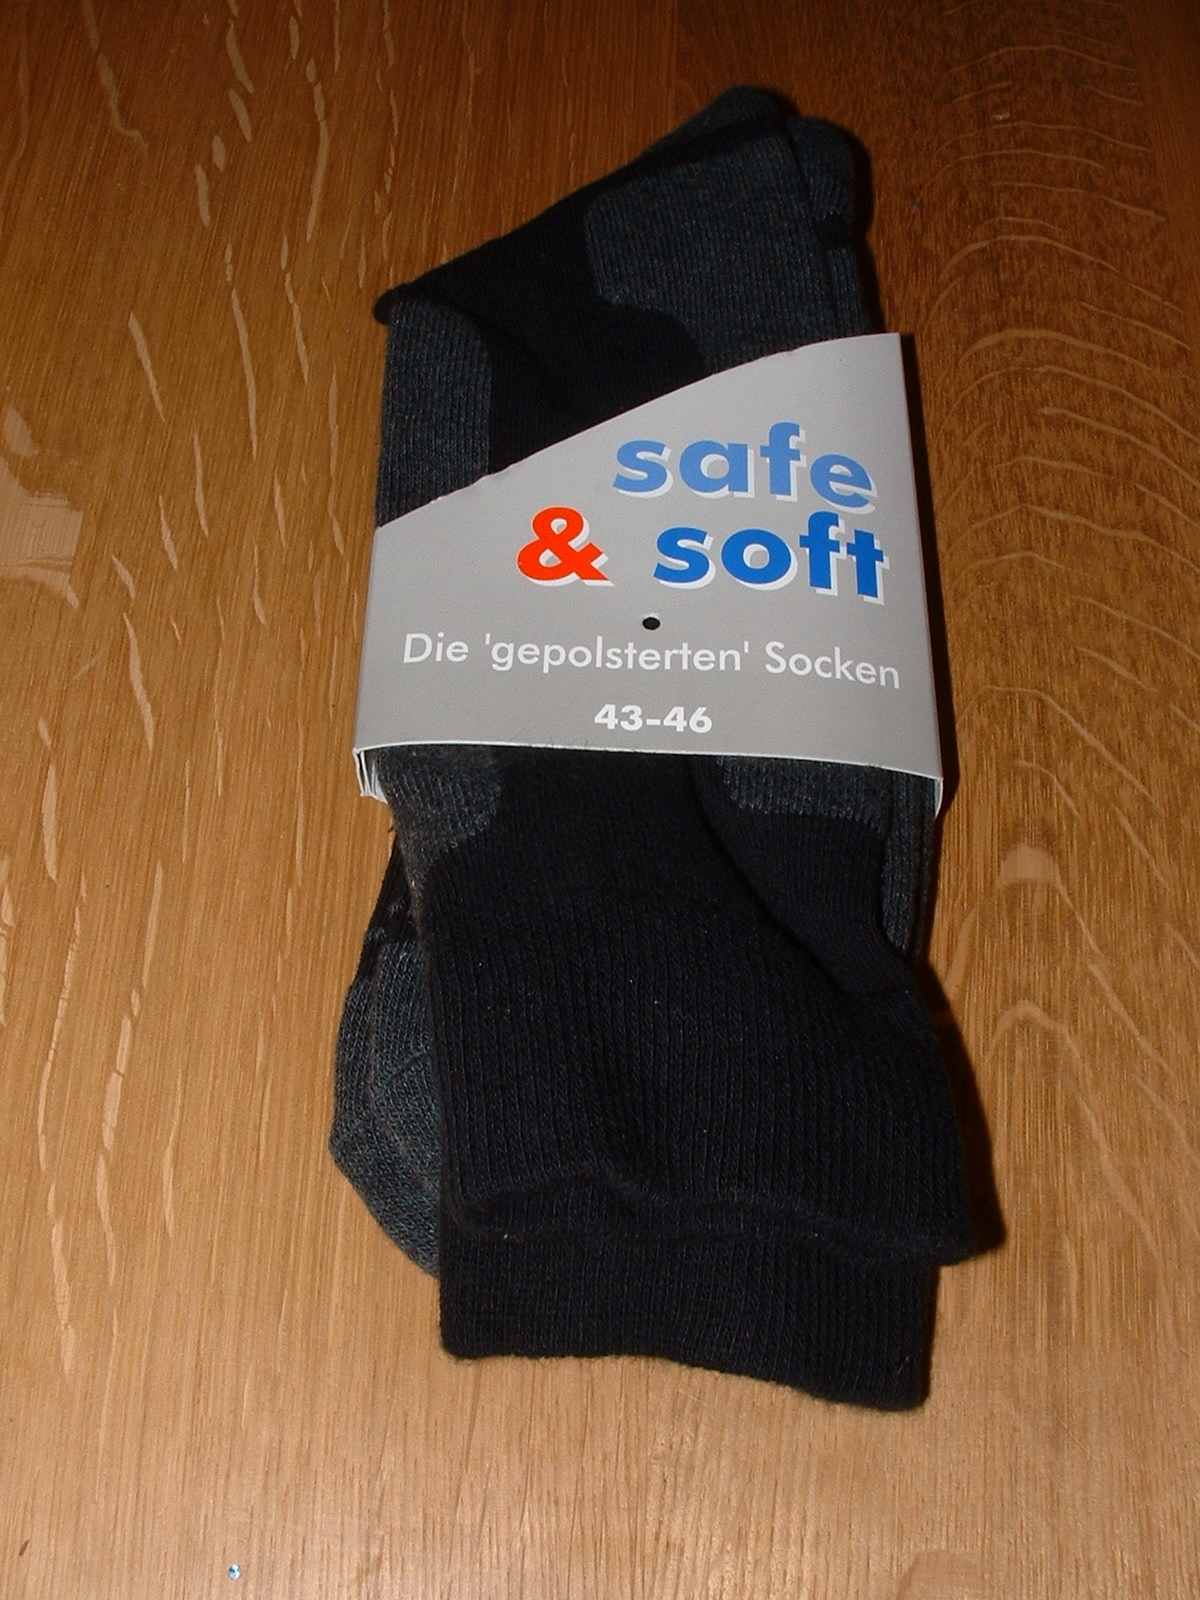 Socken von der Raiffeisen-Warengenossenschaft Hunte-Geestrand e.G in Ganderkesee - Westtangente